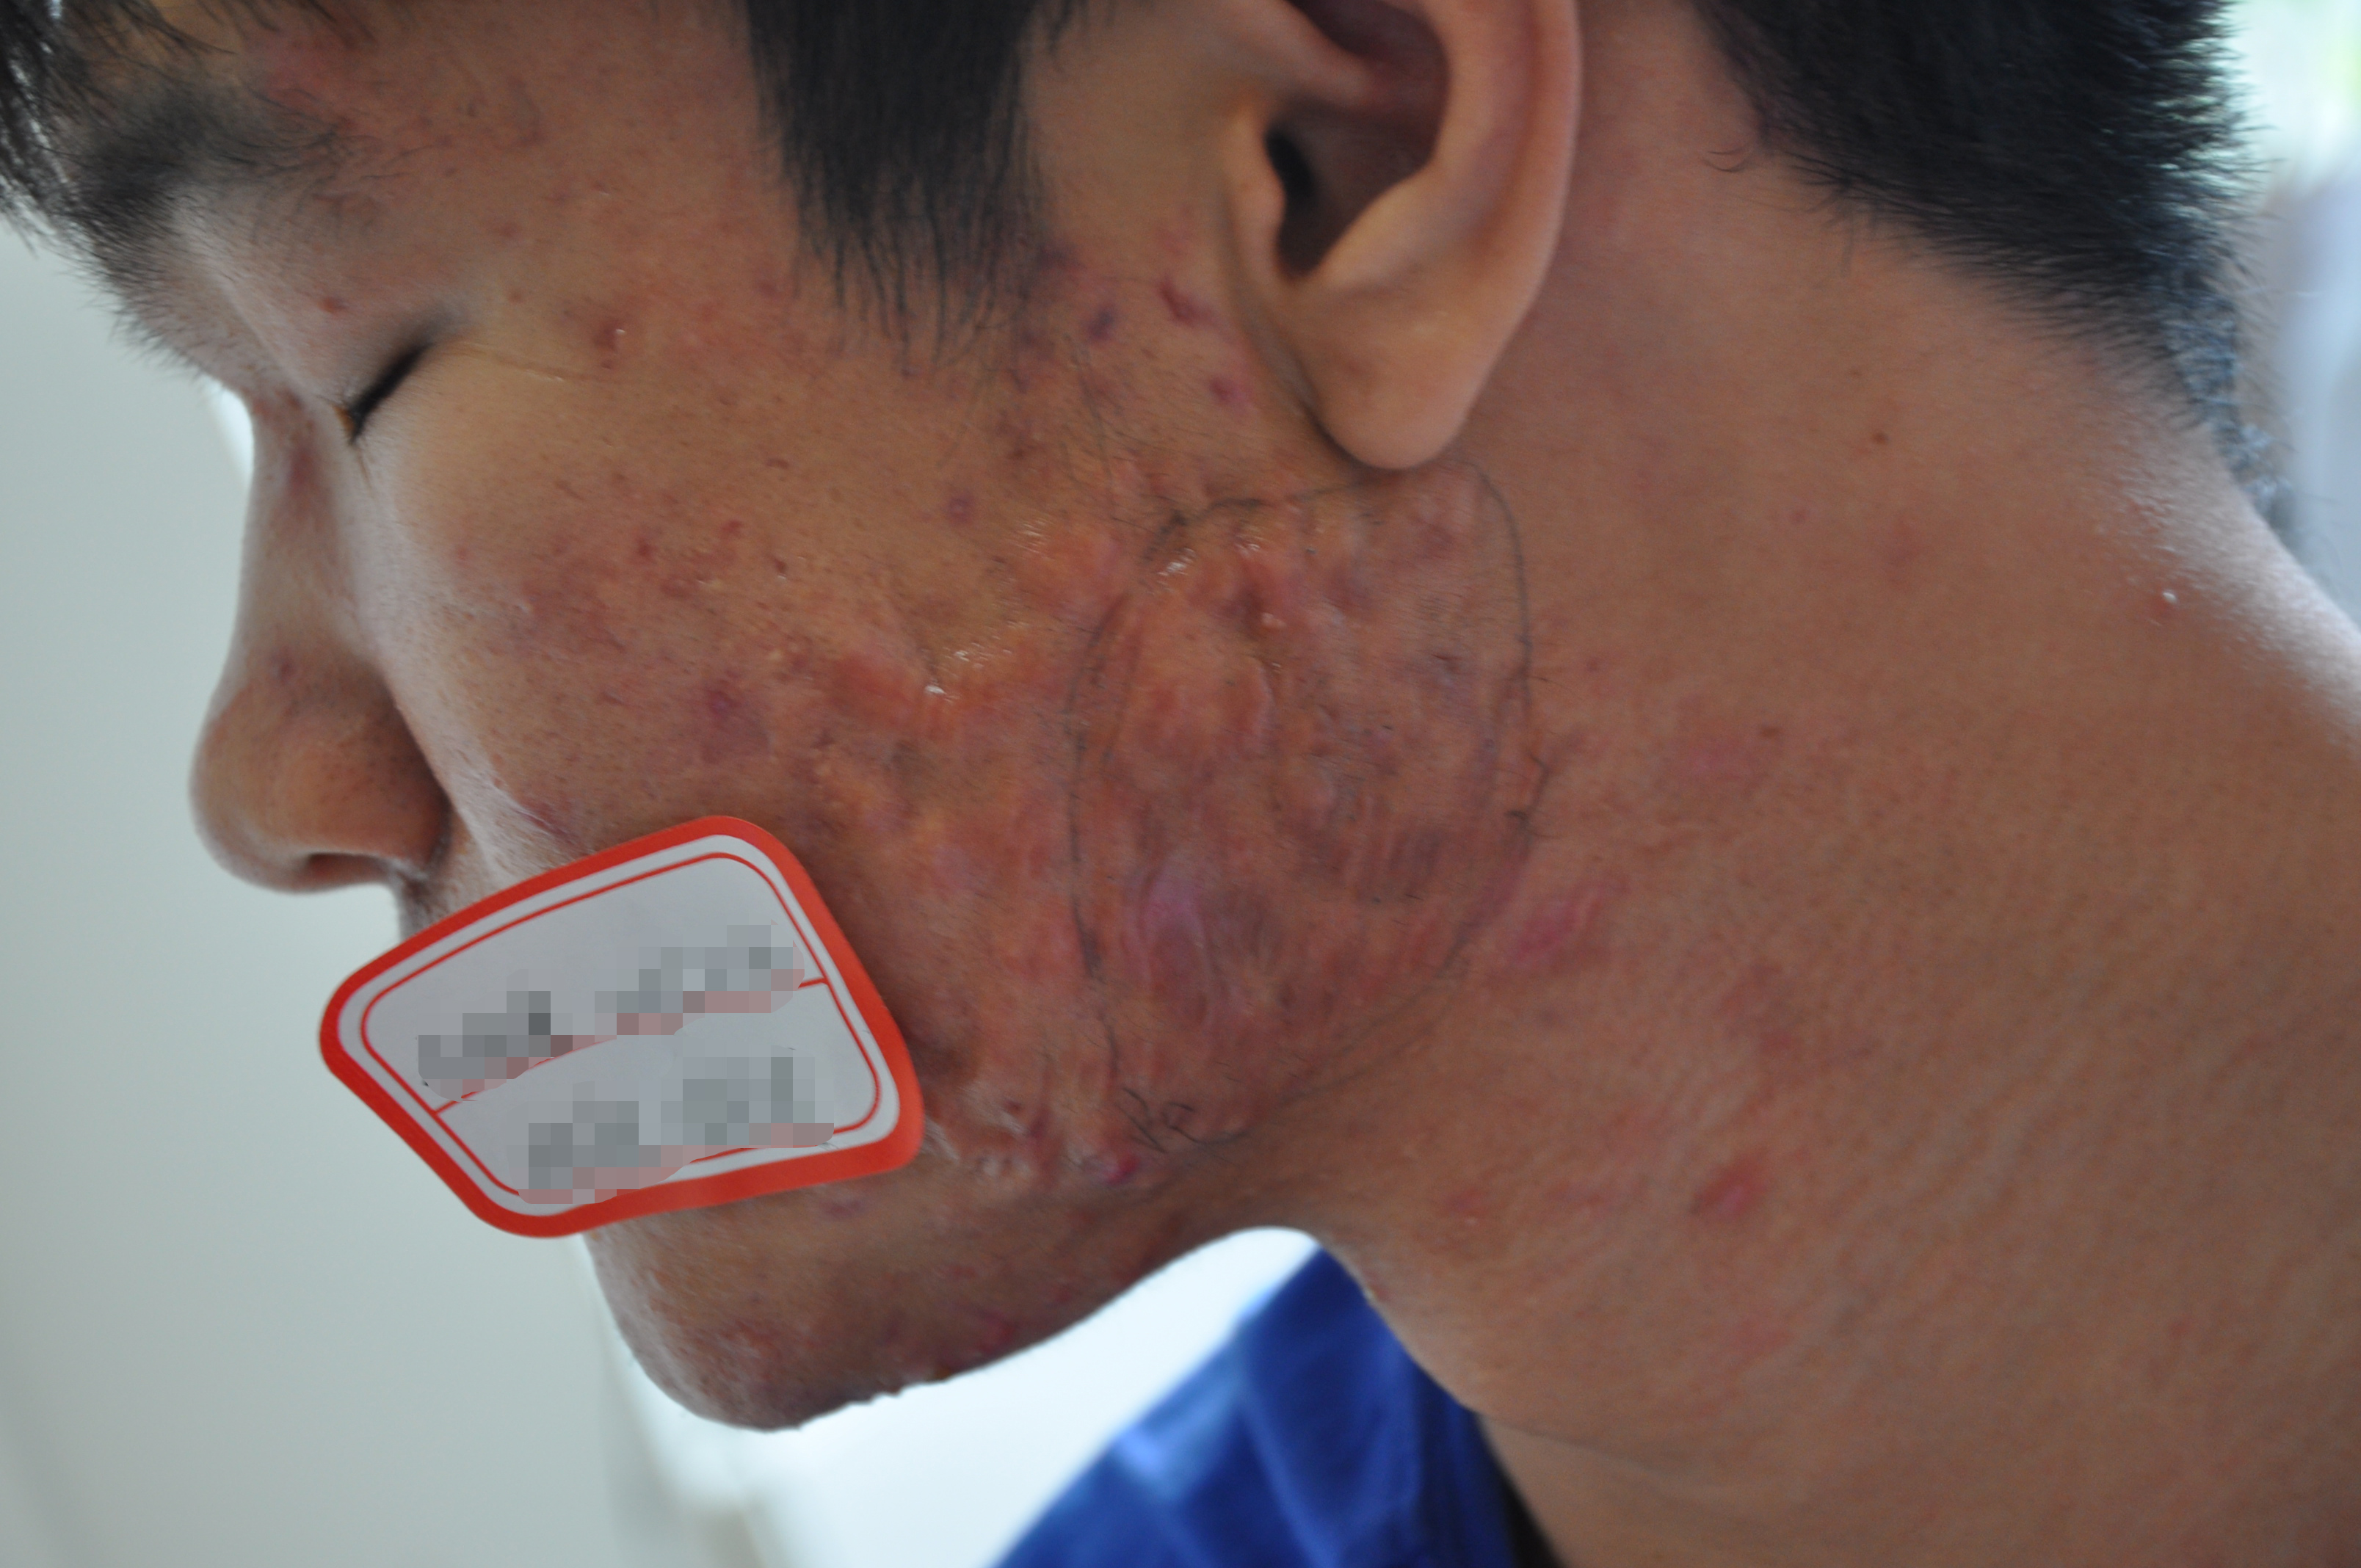 痤疮疤痕(acne scars)是由青春痘痤疮在恢复后所留下的疤痕;是由于